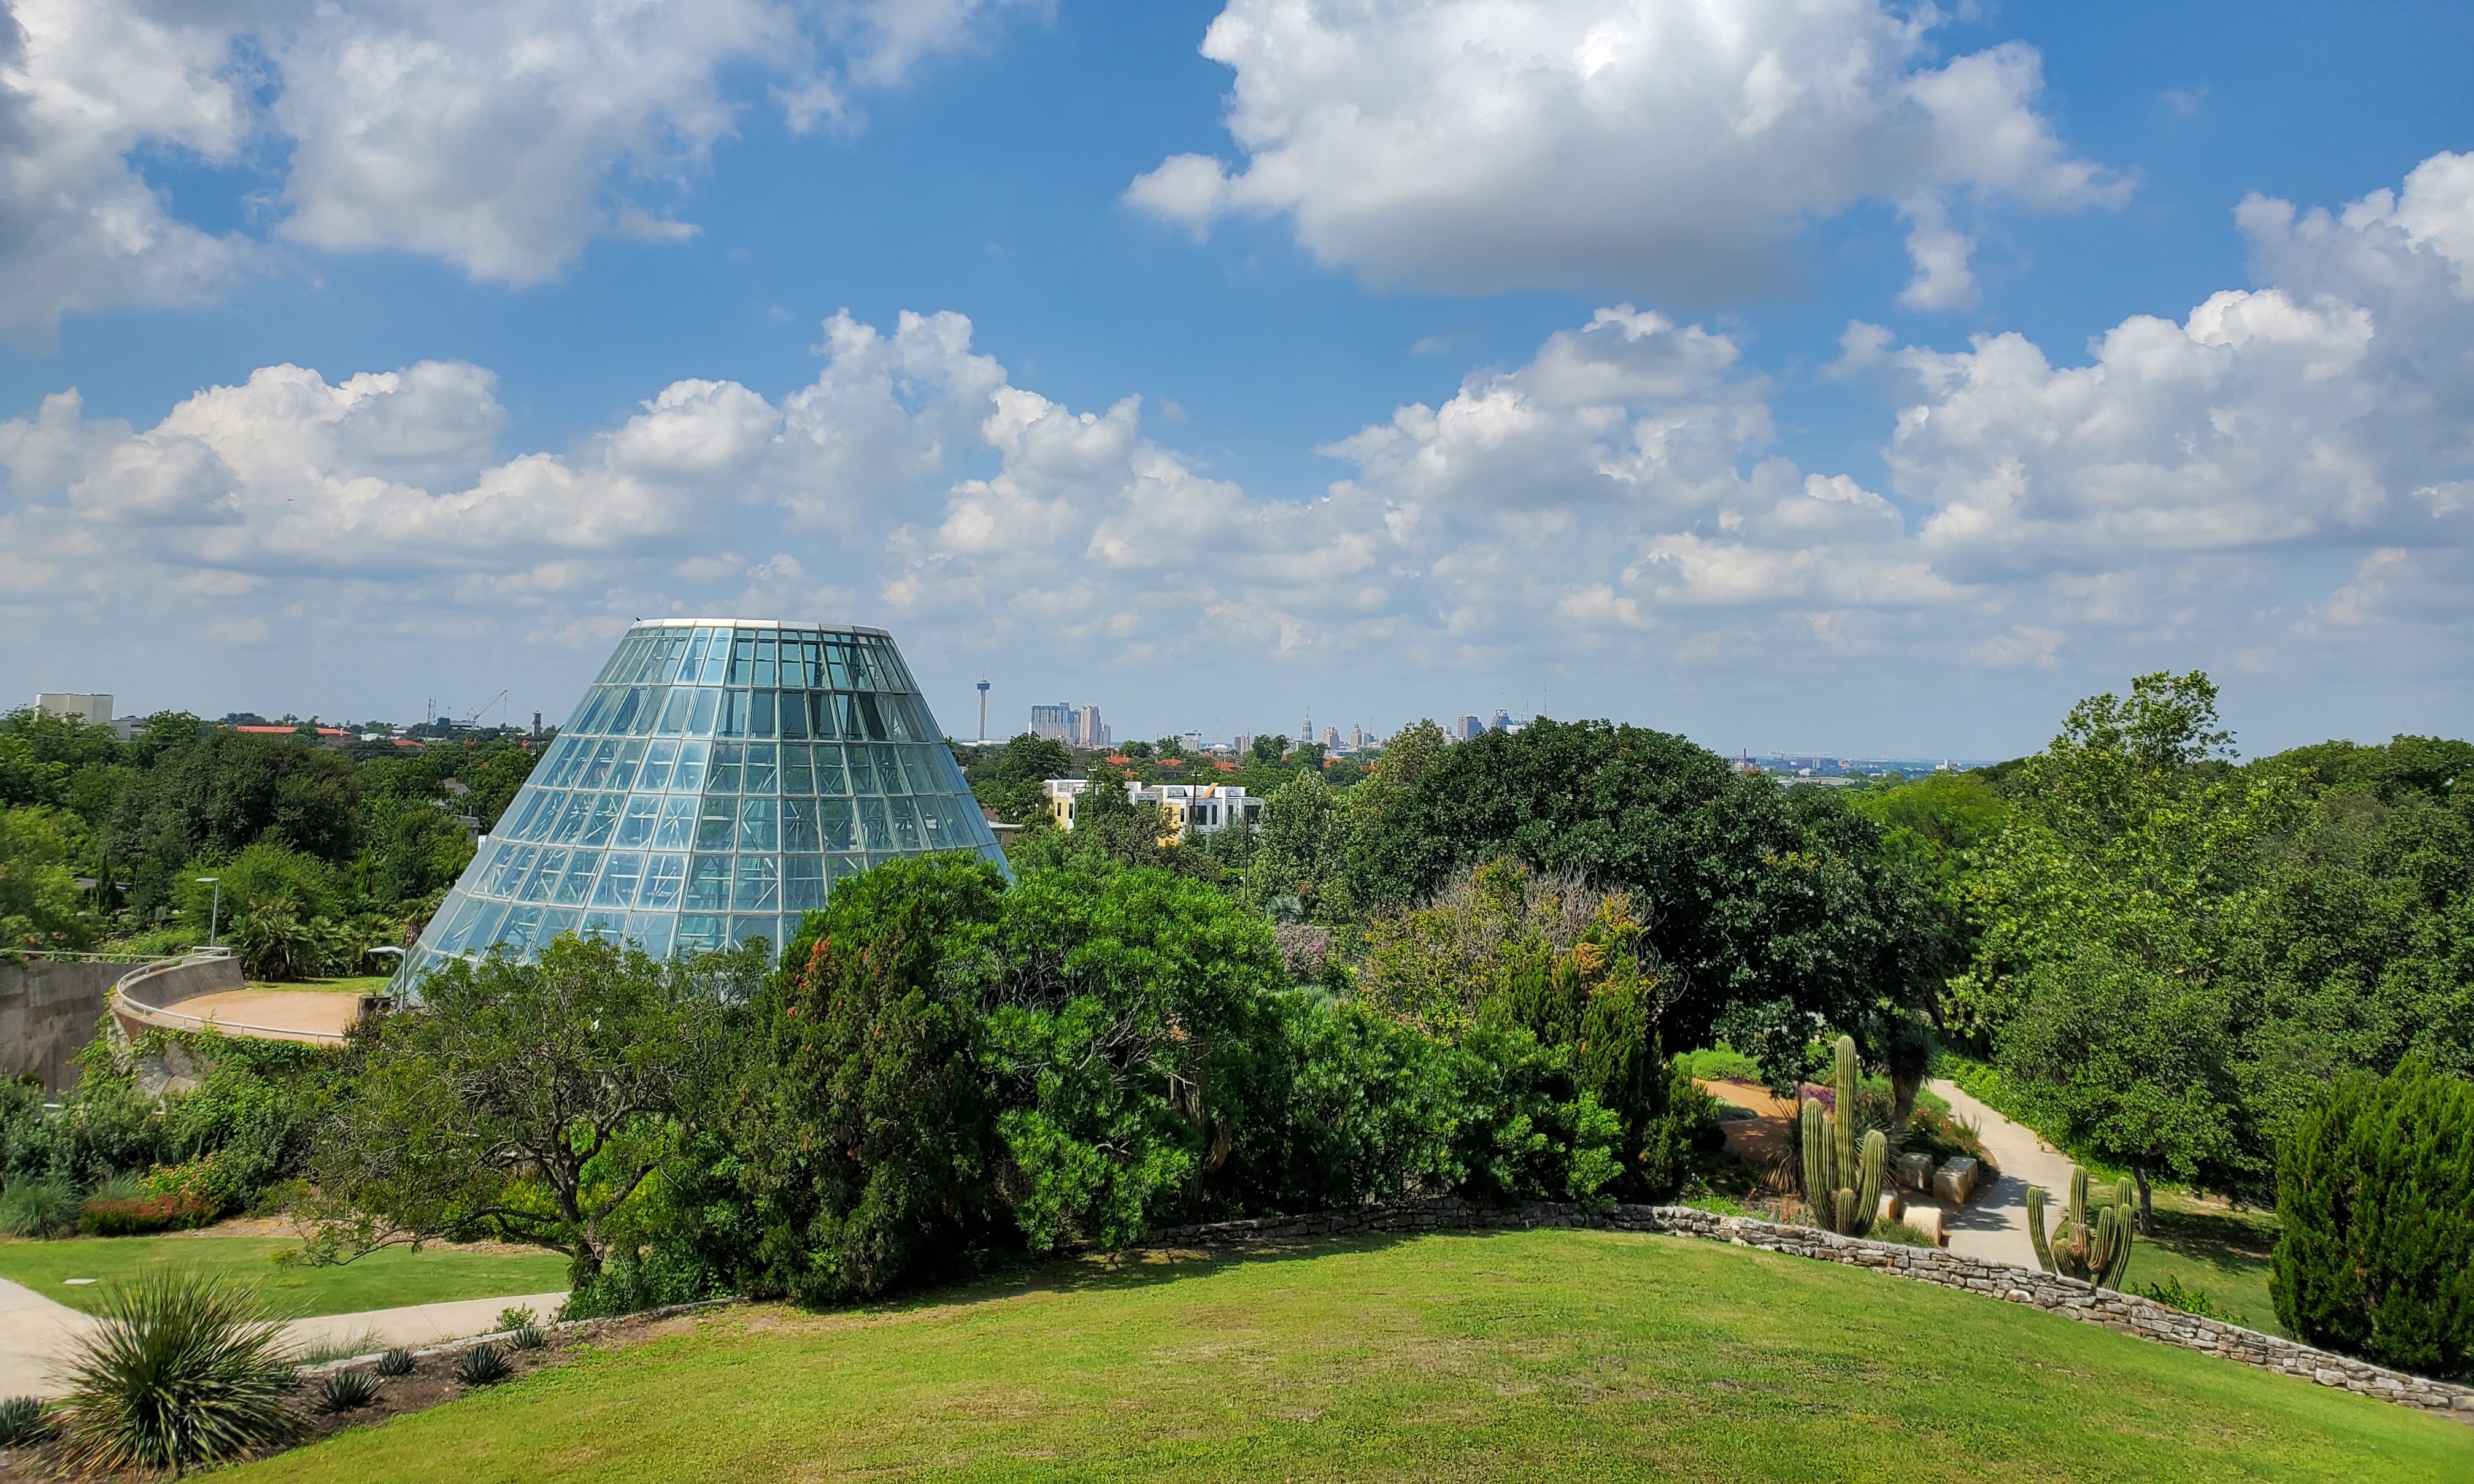 San Antonio Botanical Garden - Wikipedia